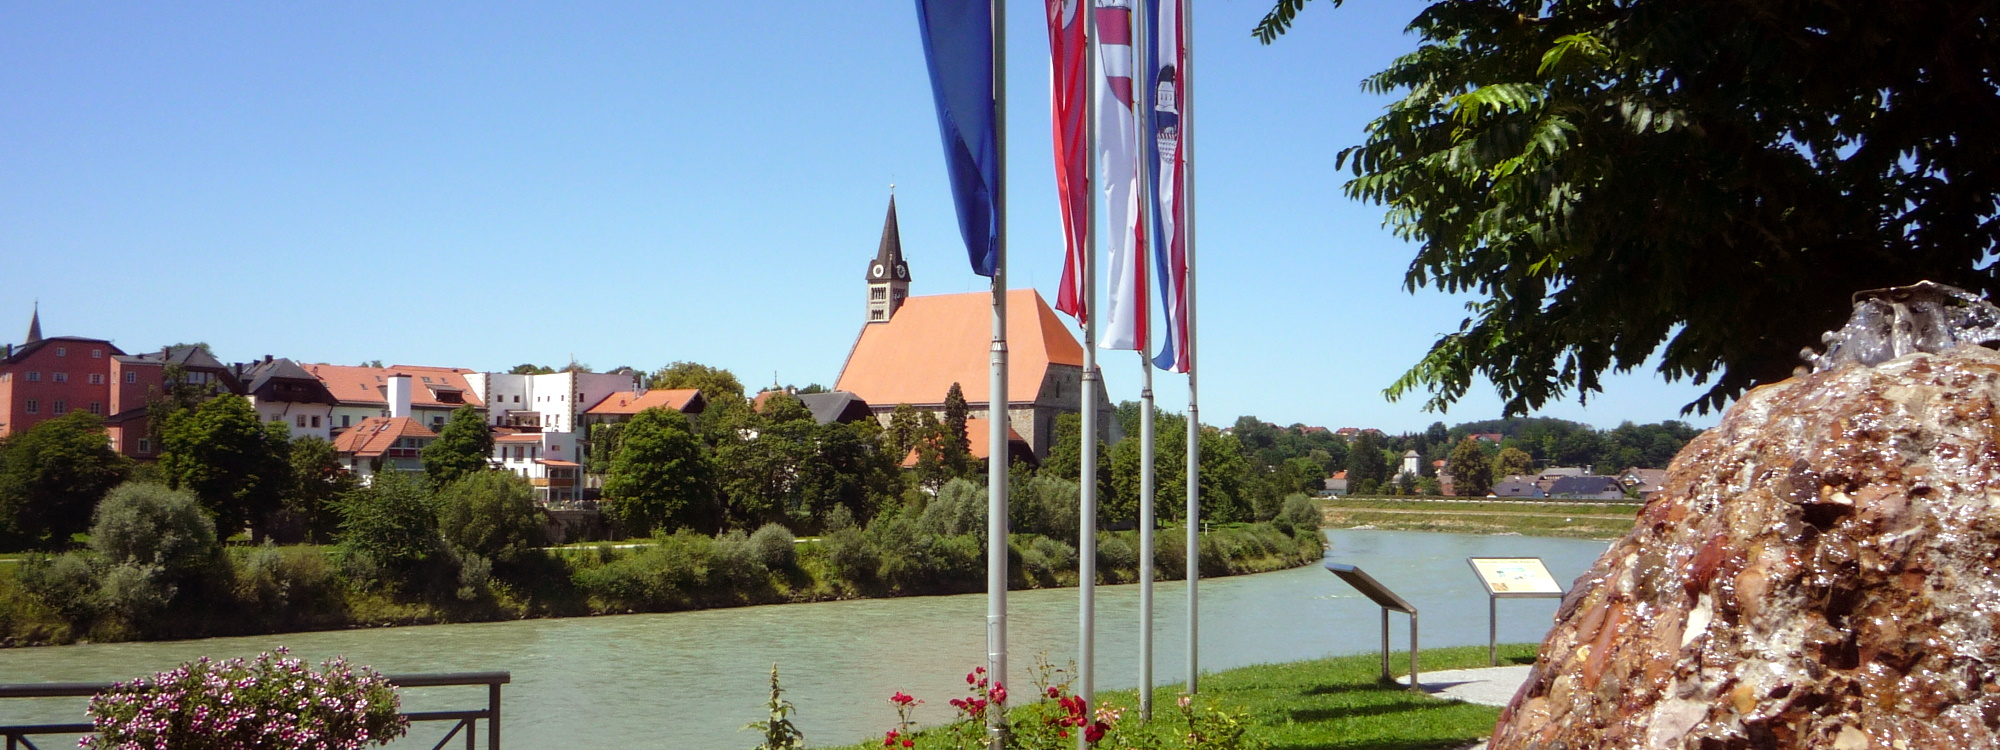 Aufnahme der Salzachschleife mit Stiftskirche von Oberndorf in Österreich aus